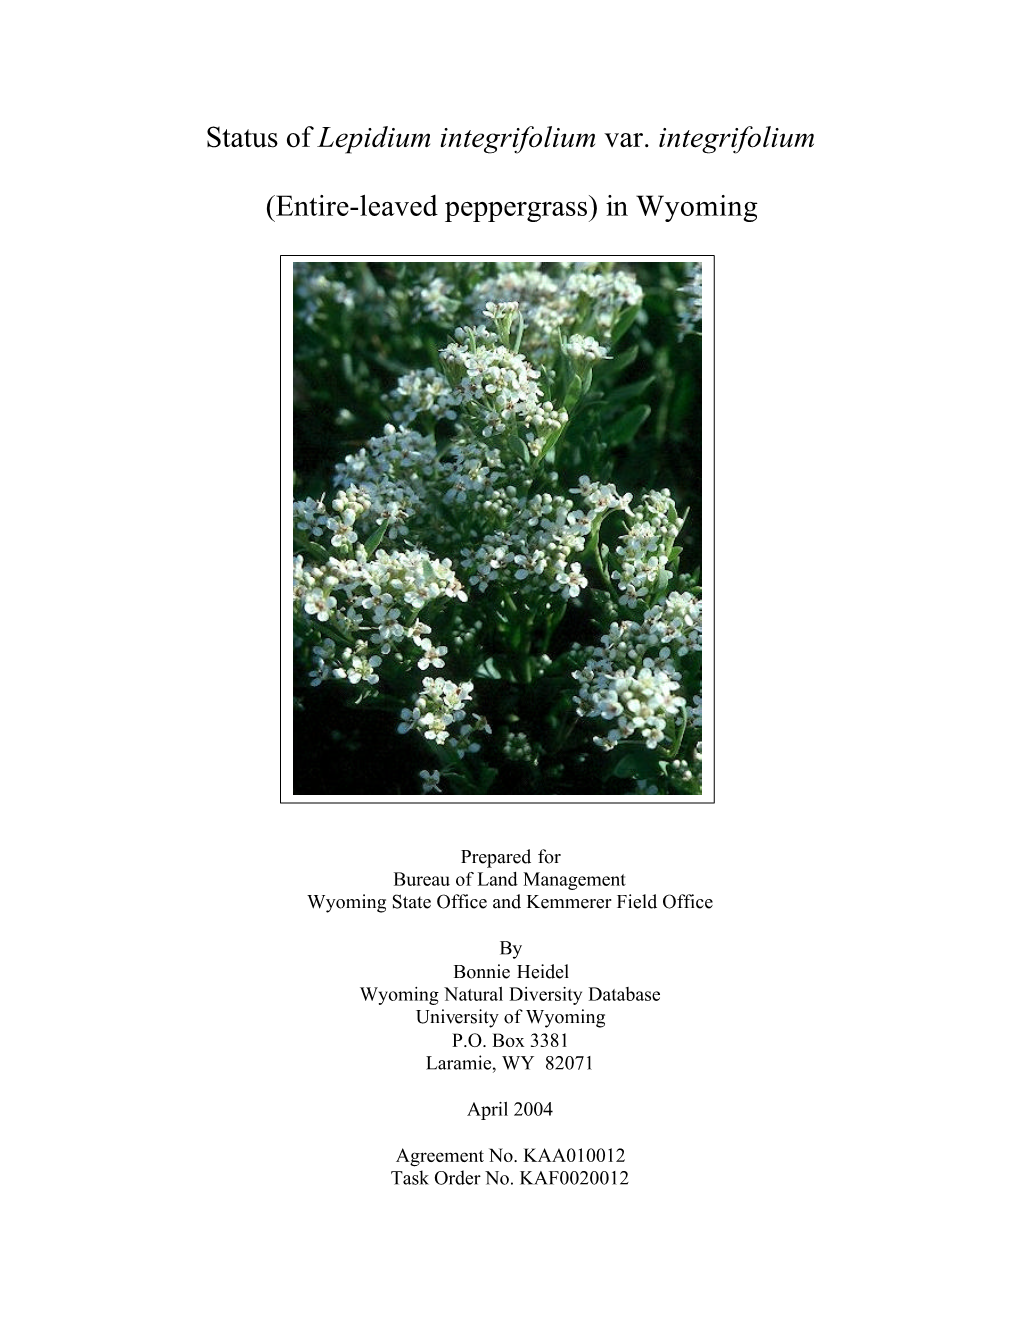 Status of Lepidium Integrifolium Var. Integrifolium (Entire-Leaved Peppergrass) in Wyoming